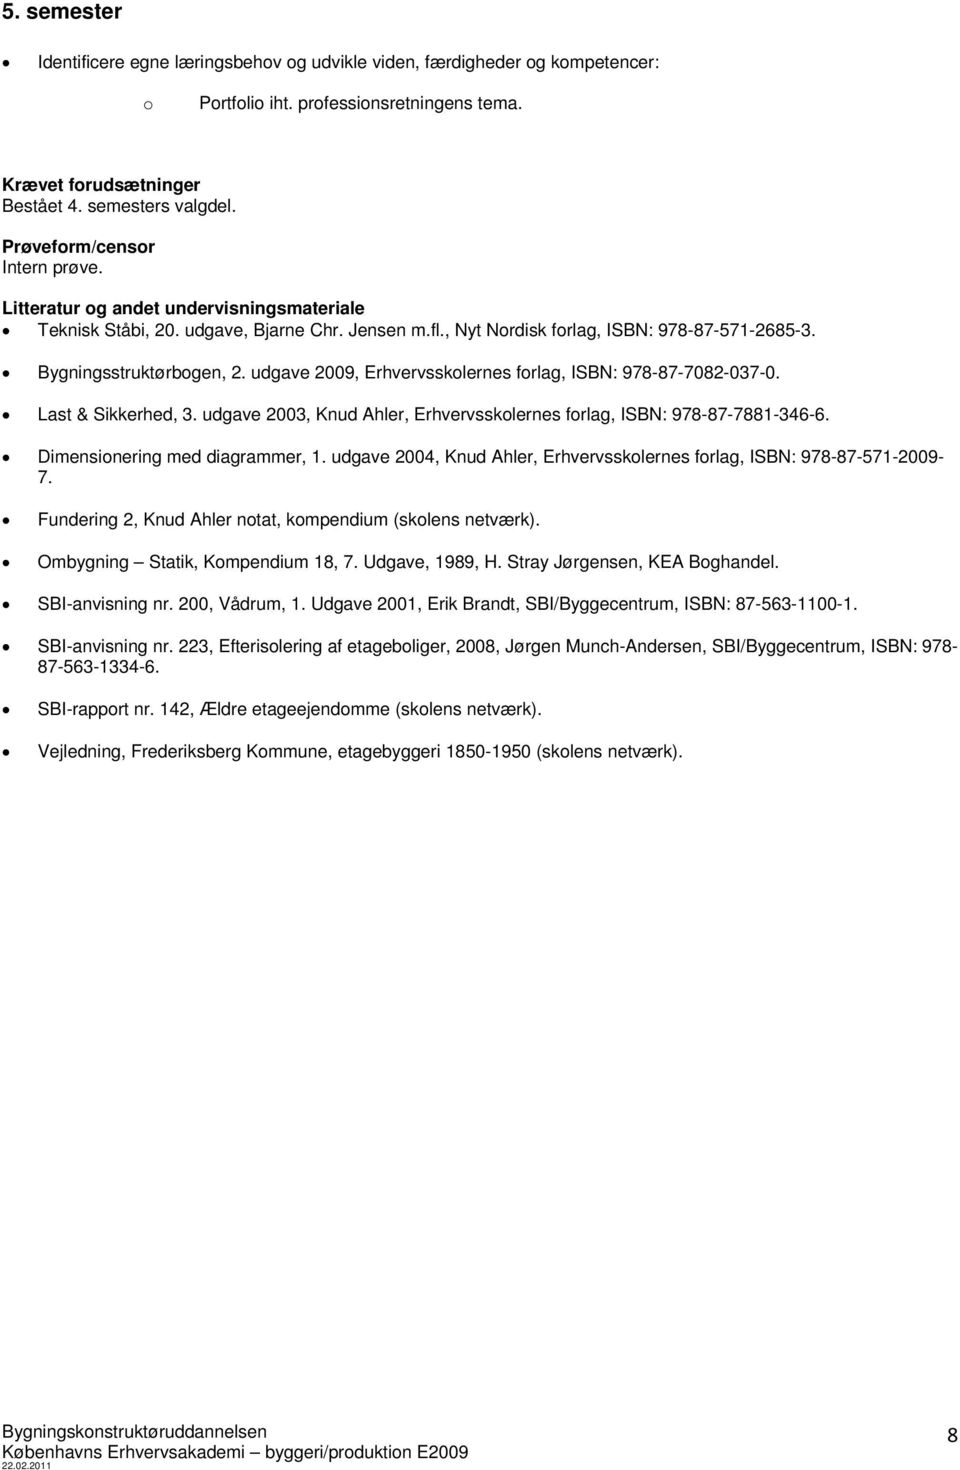 udgave 2009, Erhvervssklernes frlag, ISBN: 978-87-7082-037-0. Last & Sikkerhed, 3. udgave 2003, Knud Ahler, Erhvervssklernes frlag, ISBN: 978-87-7881-346-6. Dimensinering med diagrammer, 1.